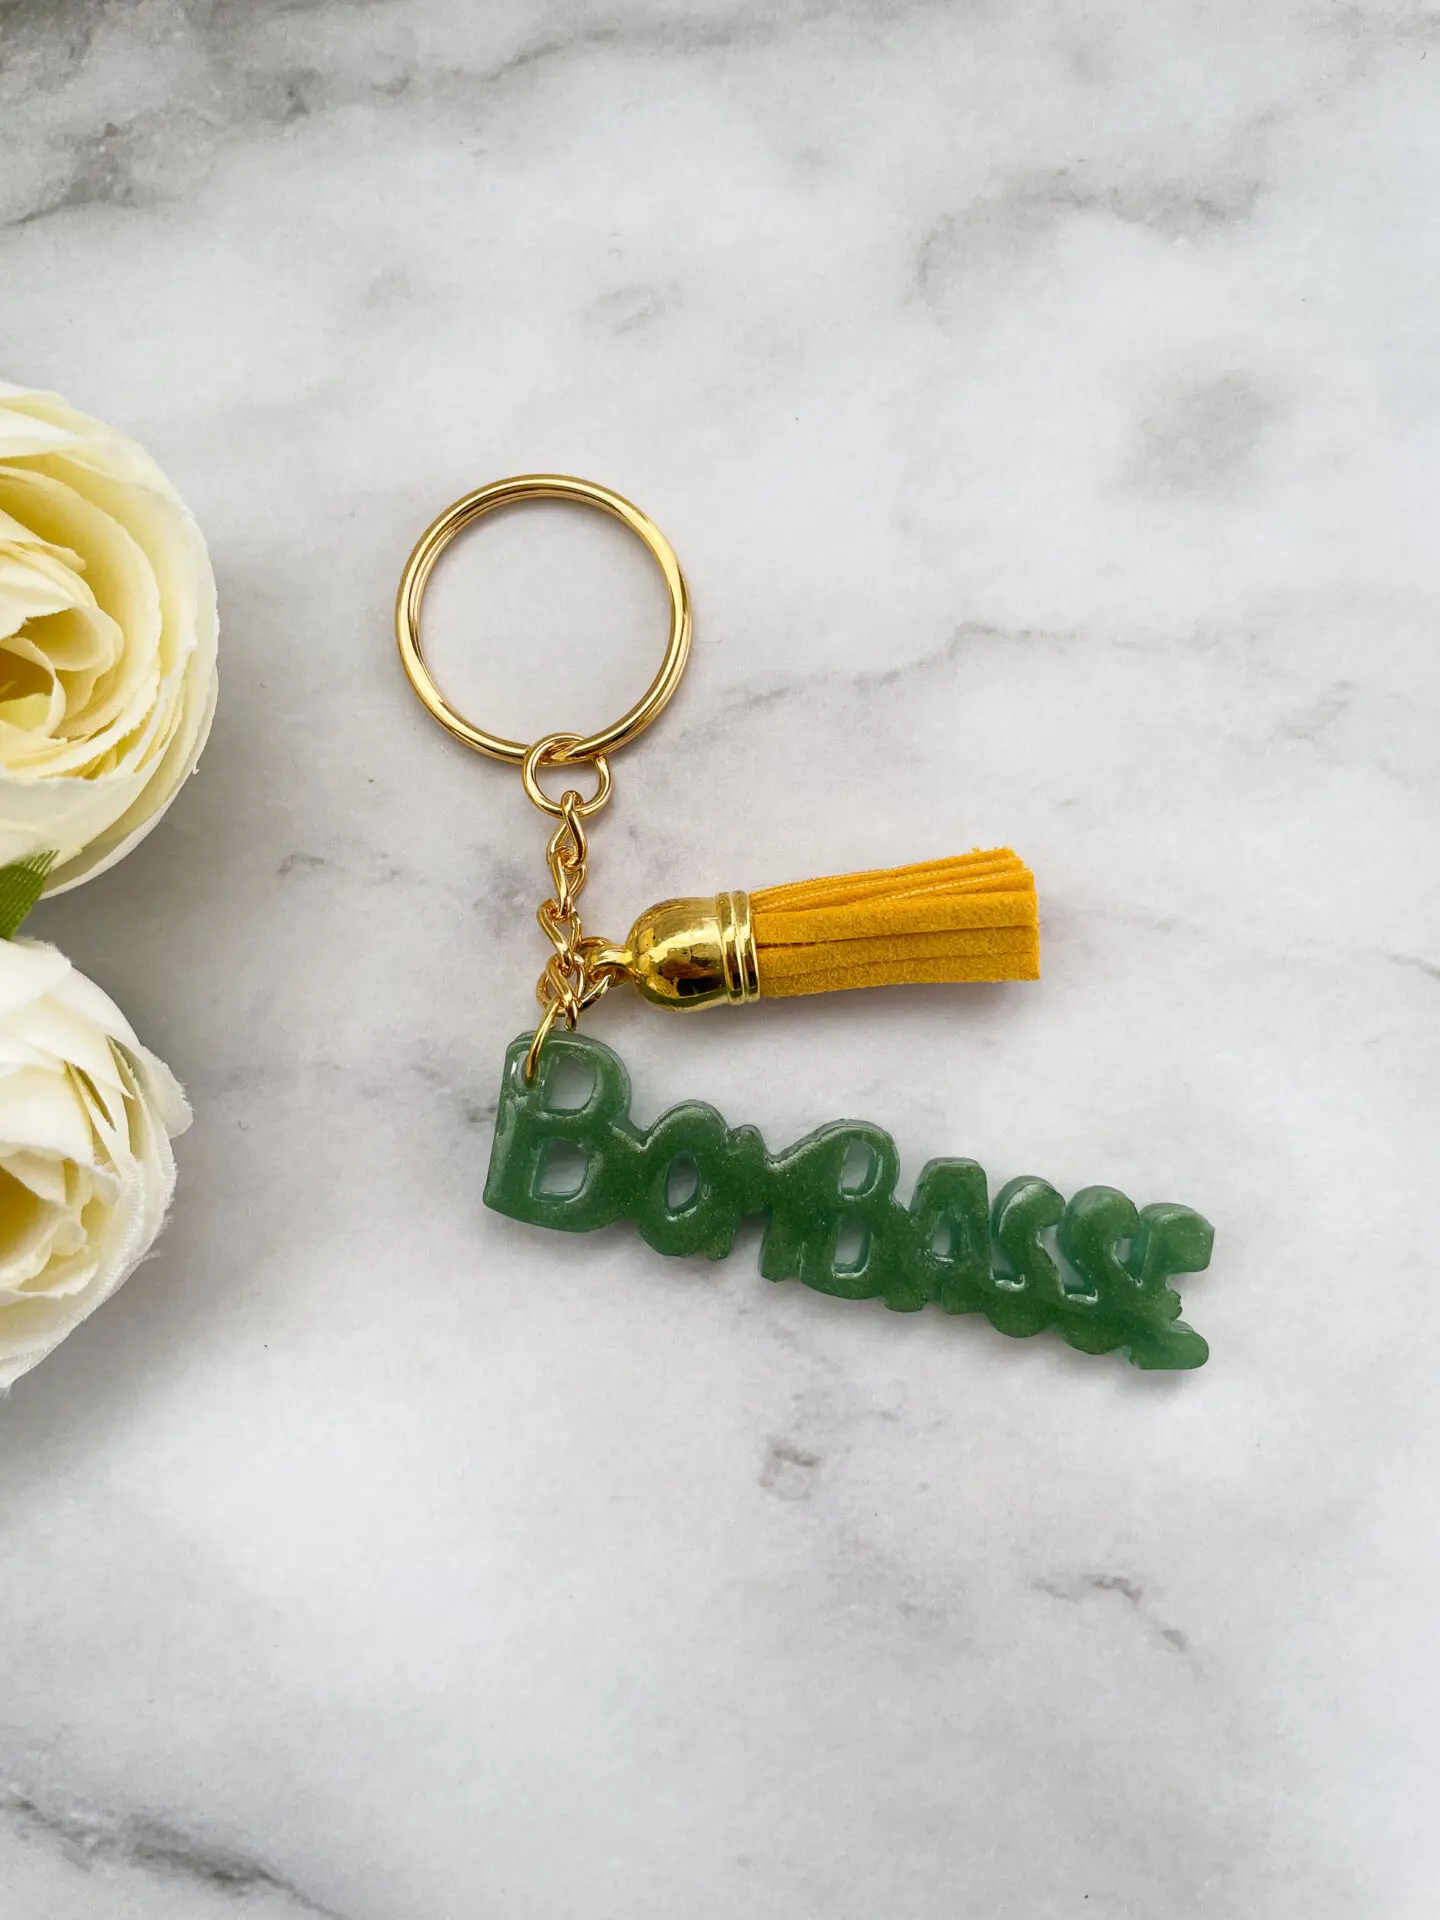 Porte clé mot - Bombasse vert - Boutique en ligne d'idées cadeau et de décoration